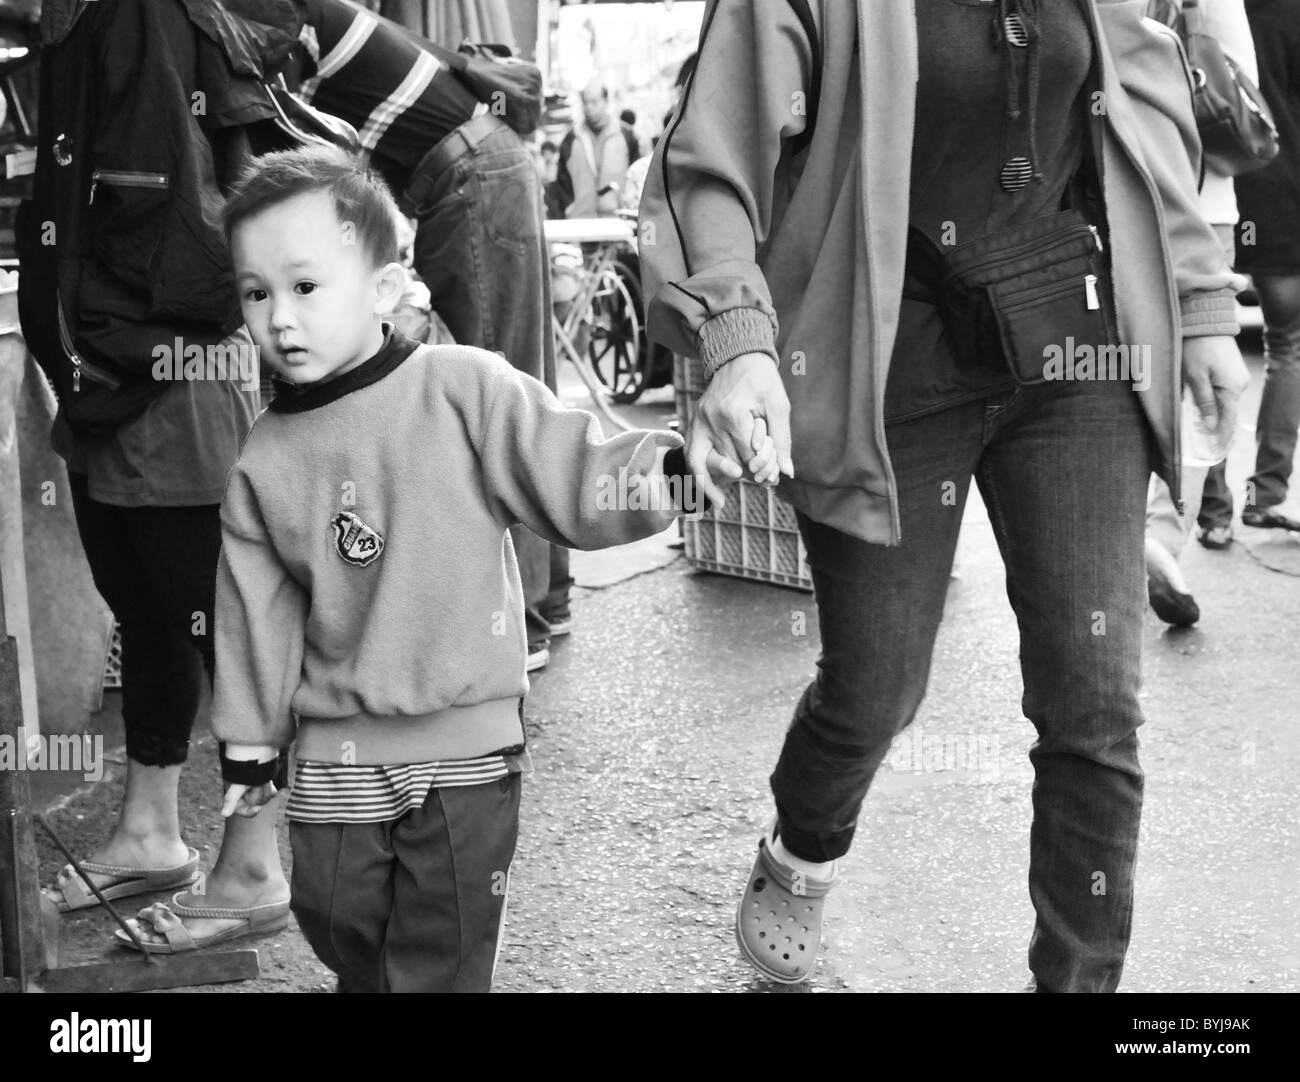 Photographie en noir et blanc d'un jeune garçon thaïlandais à un marché de rue Banque D'Images